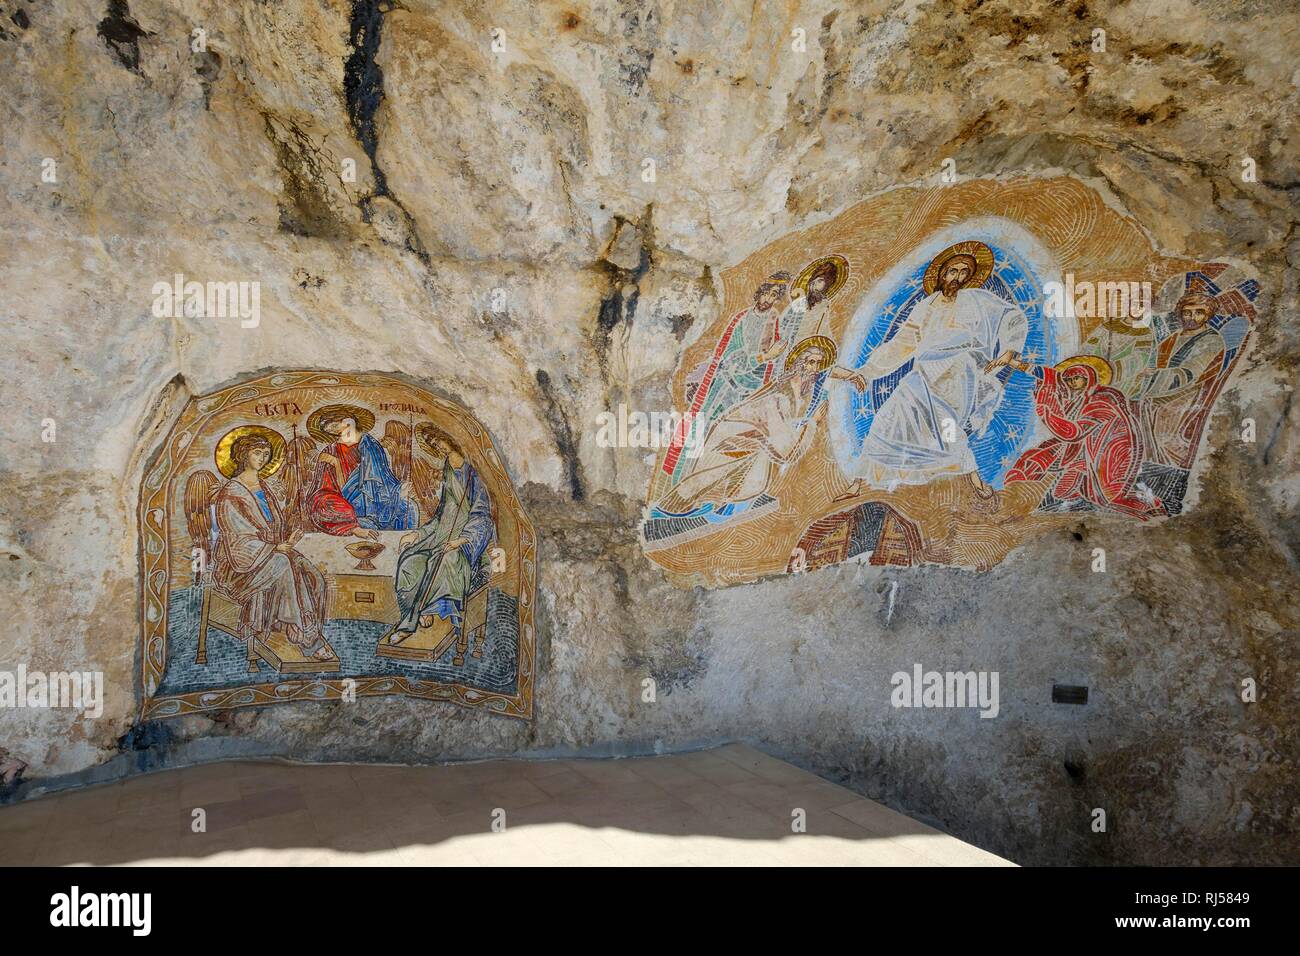 Mosaicos religiosos sobre la cara de la roca, el monasterio ortodoxo serbio de Ostrog, provincia de Danilovgrad, Montenegro Foto de stock